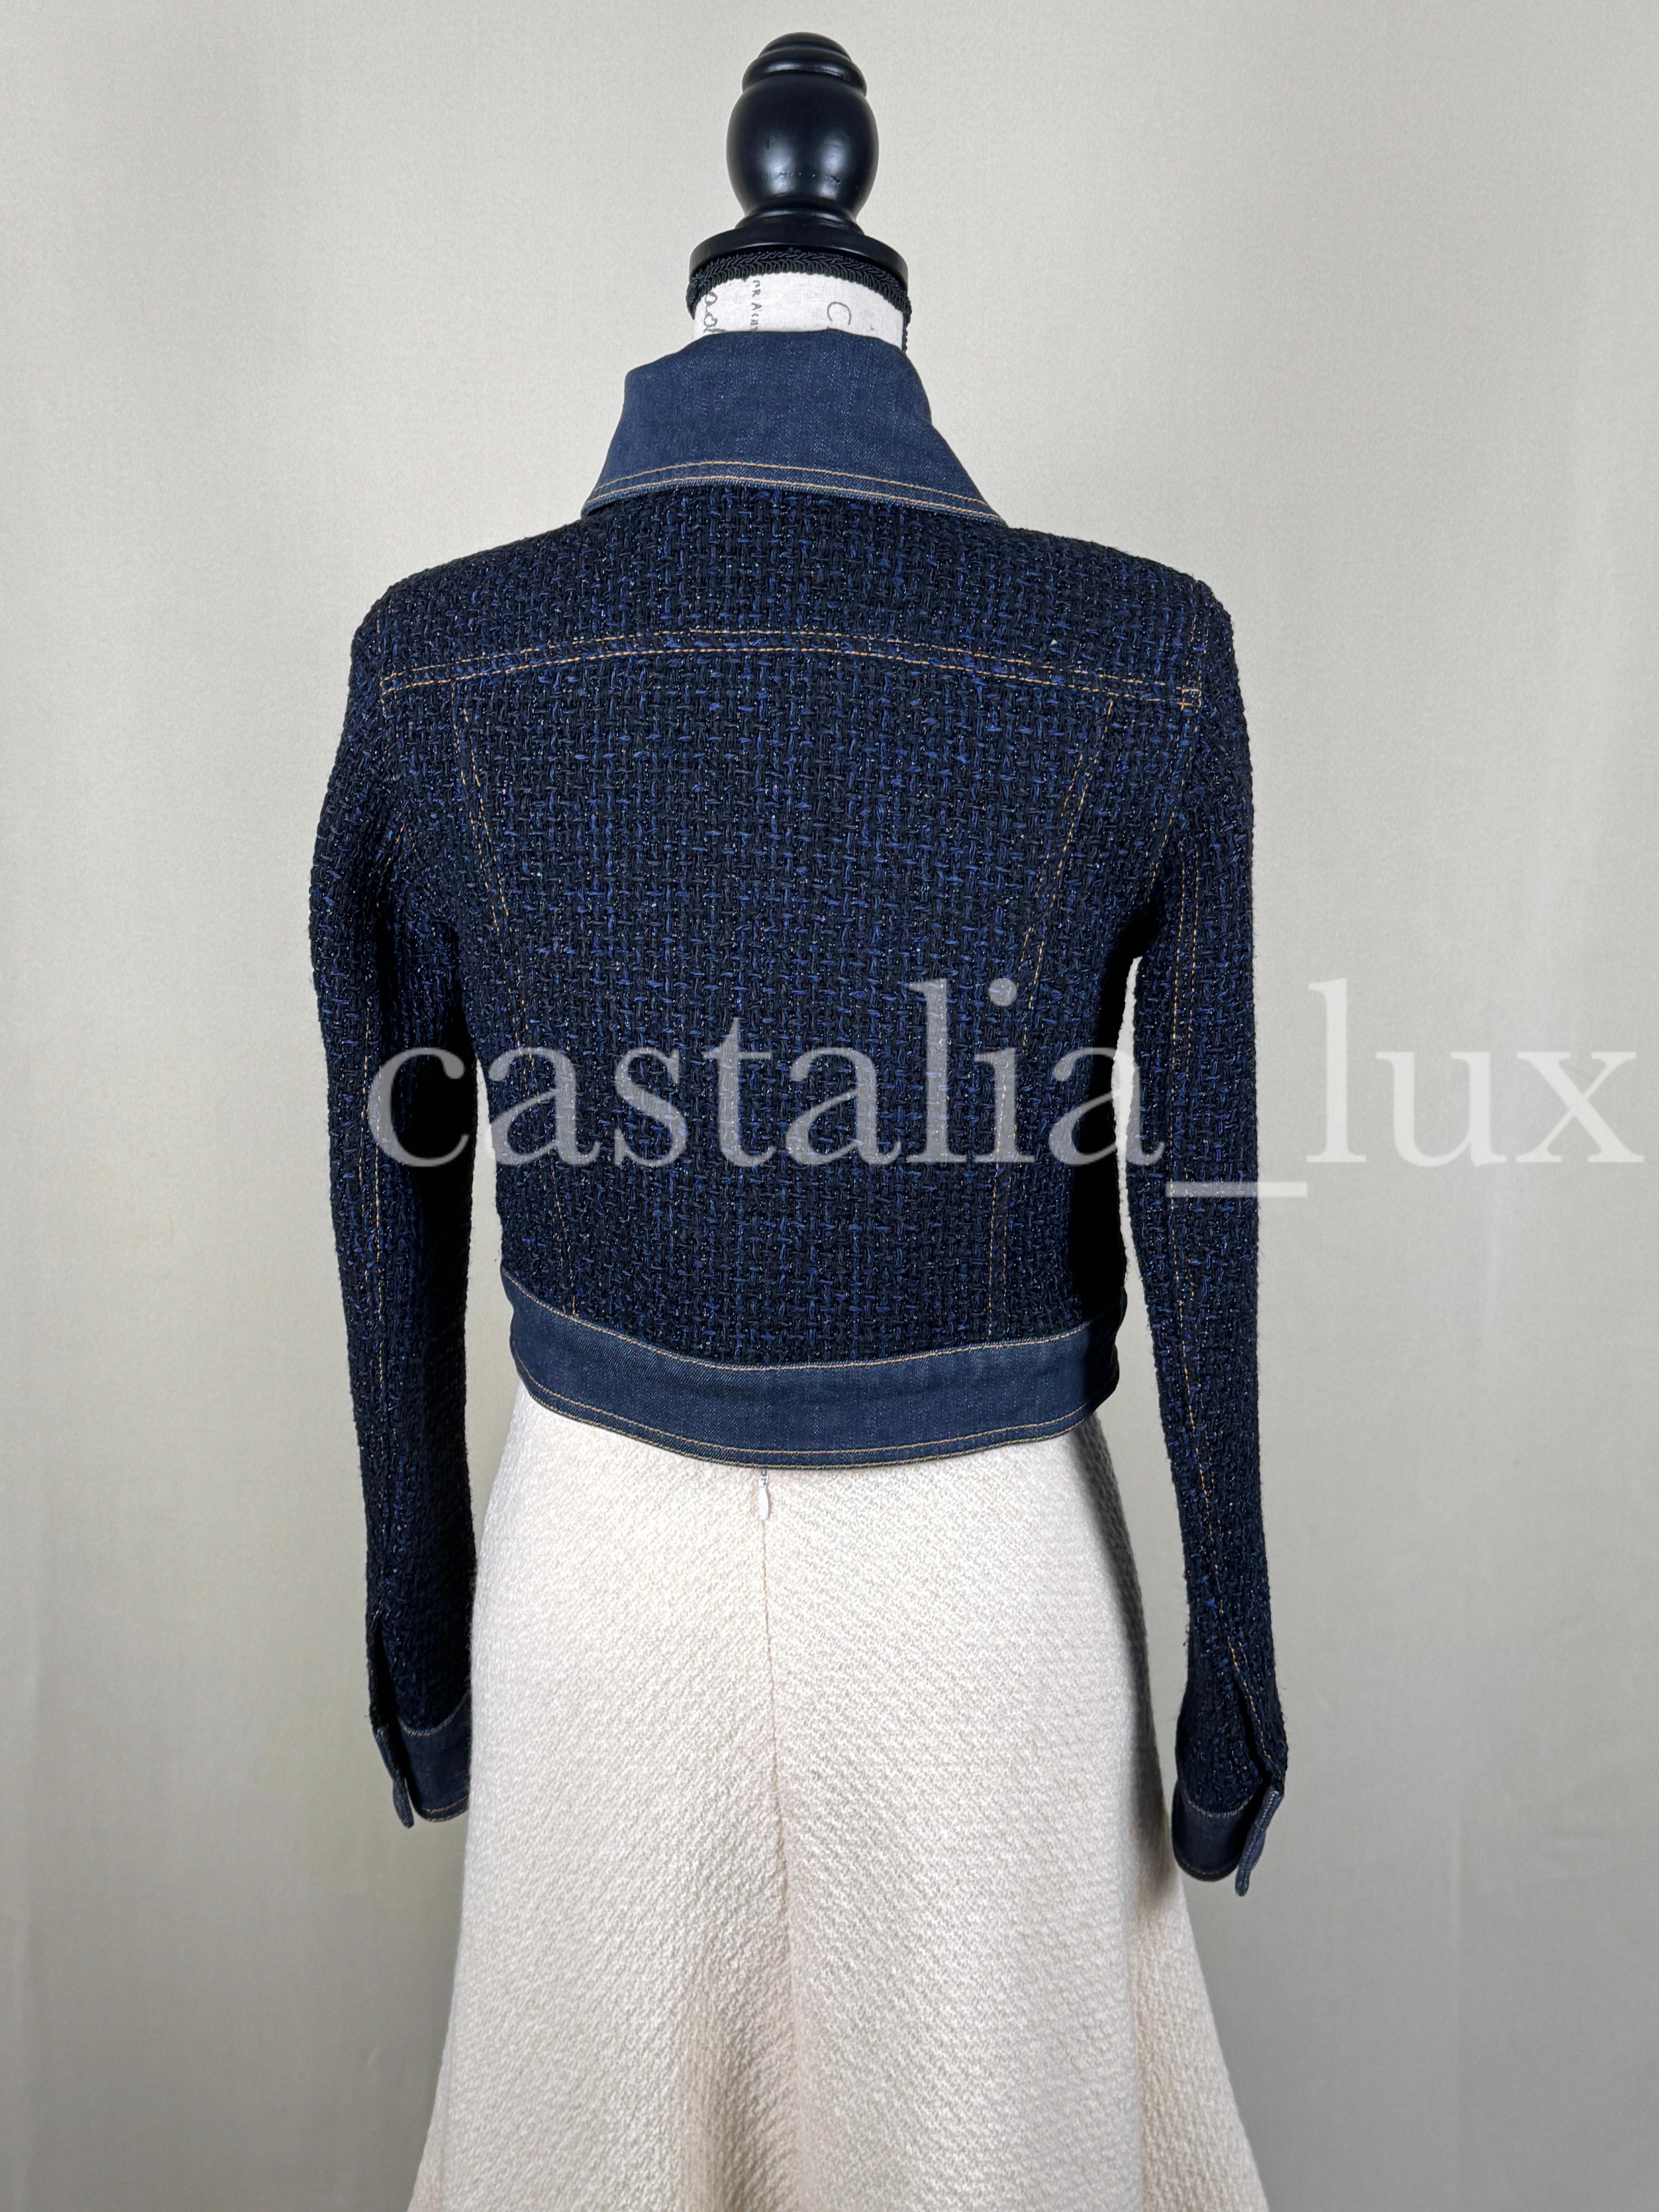 Chanel New Bestseller Lesage Tweed Jacket For Sale 14